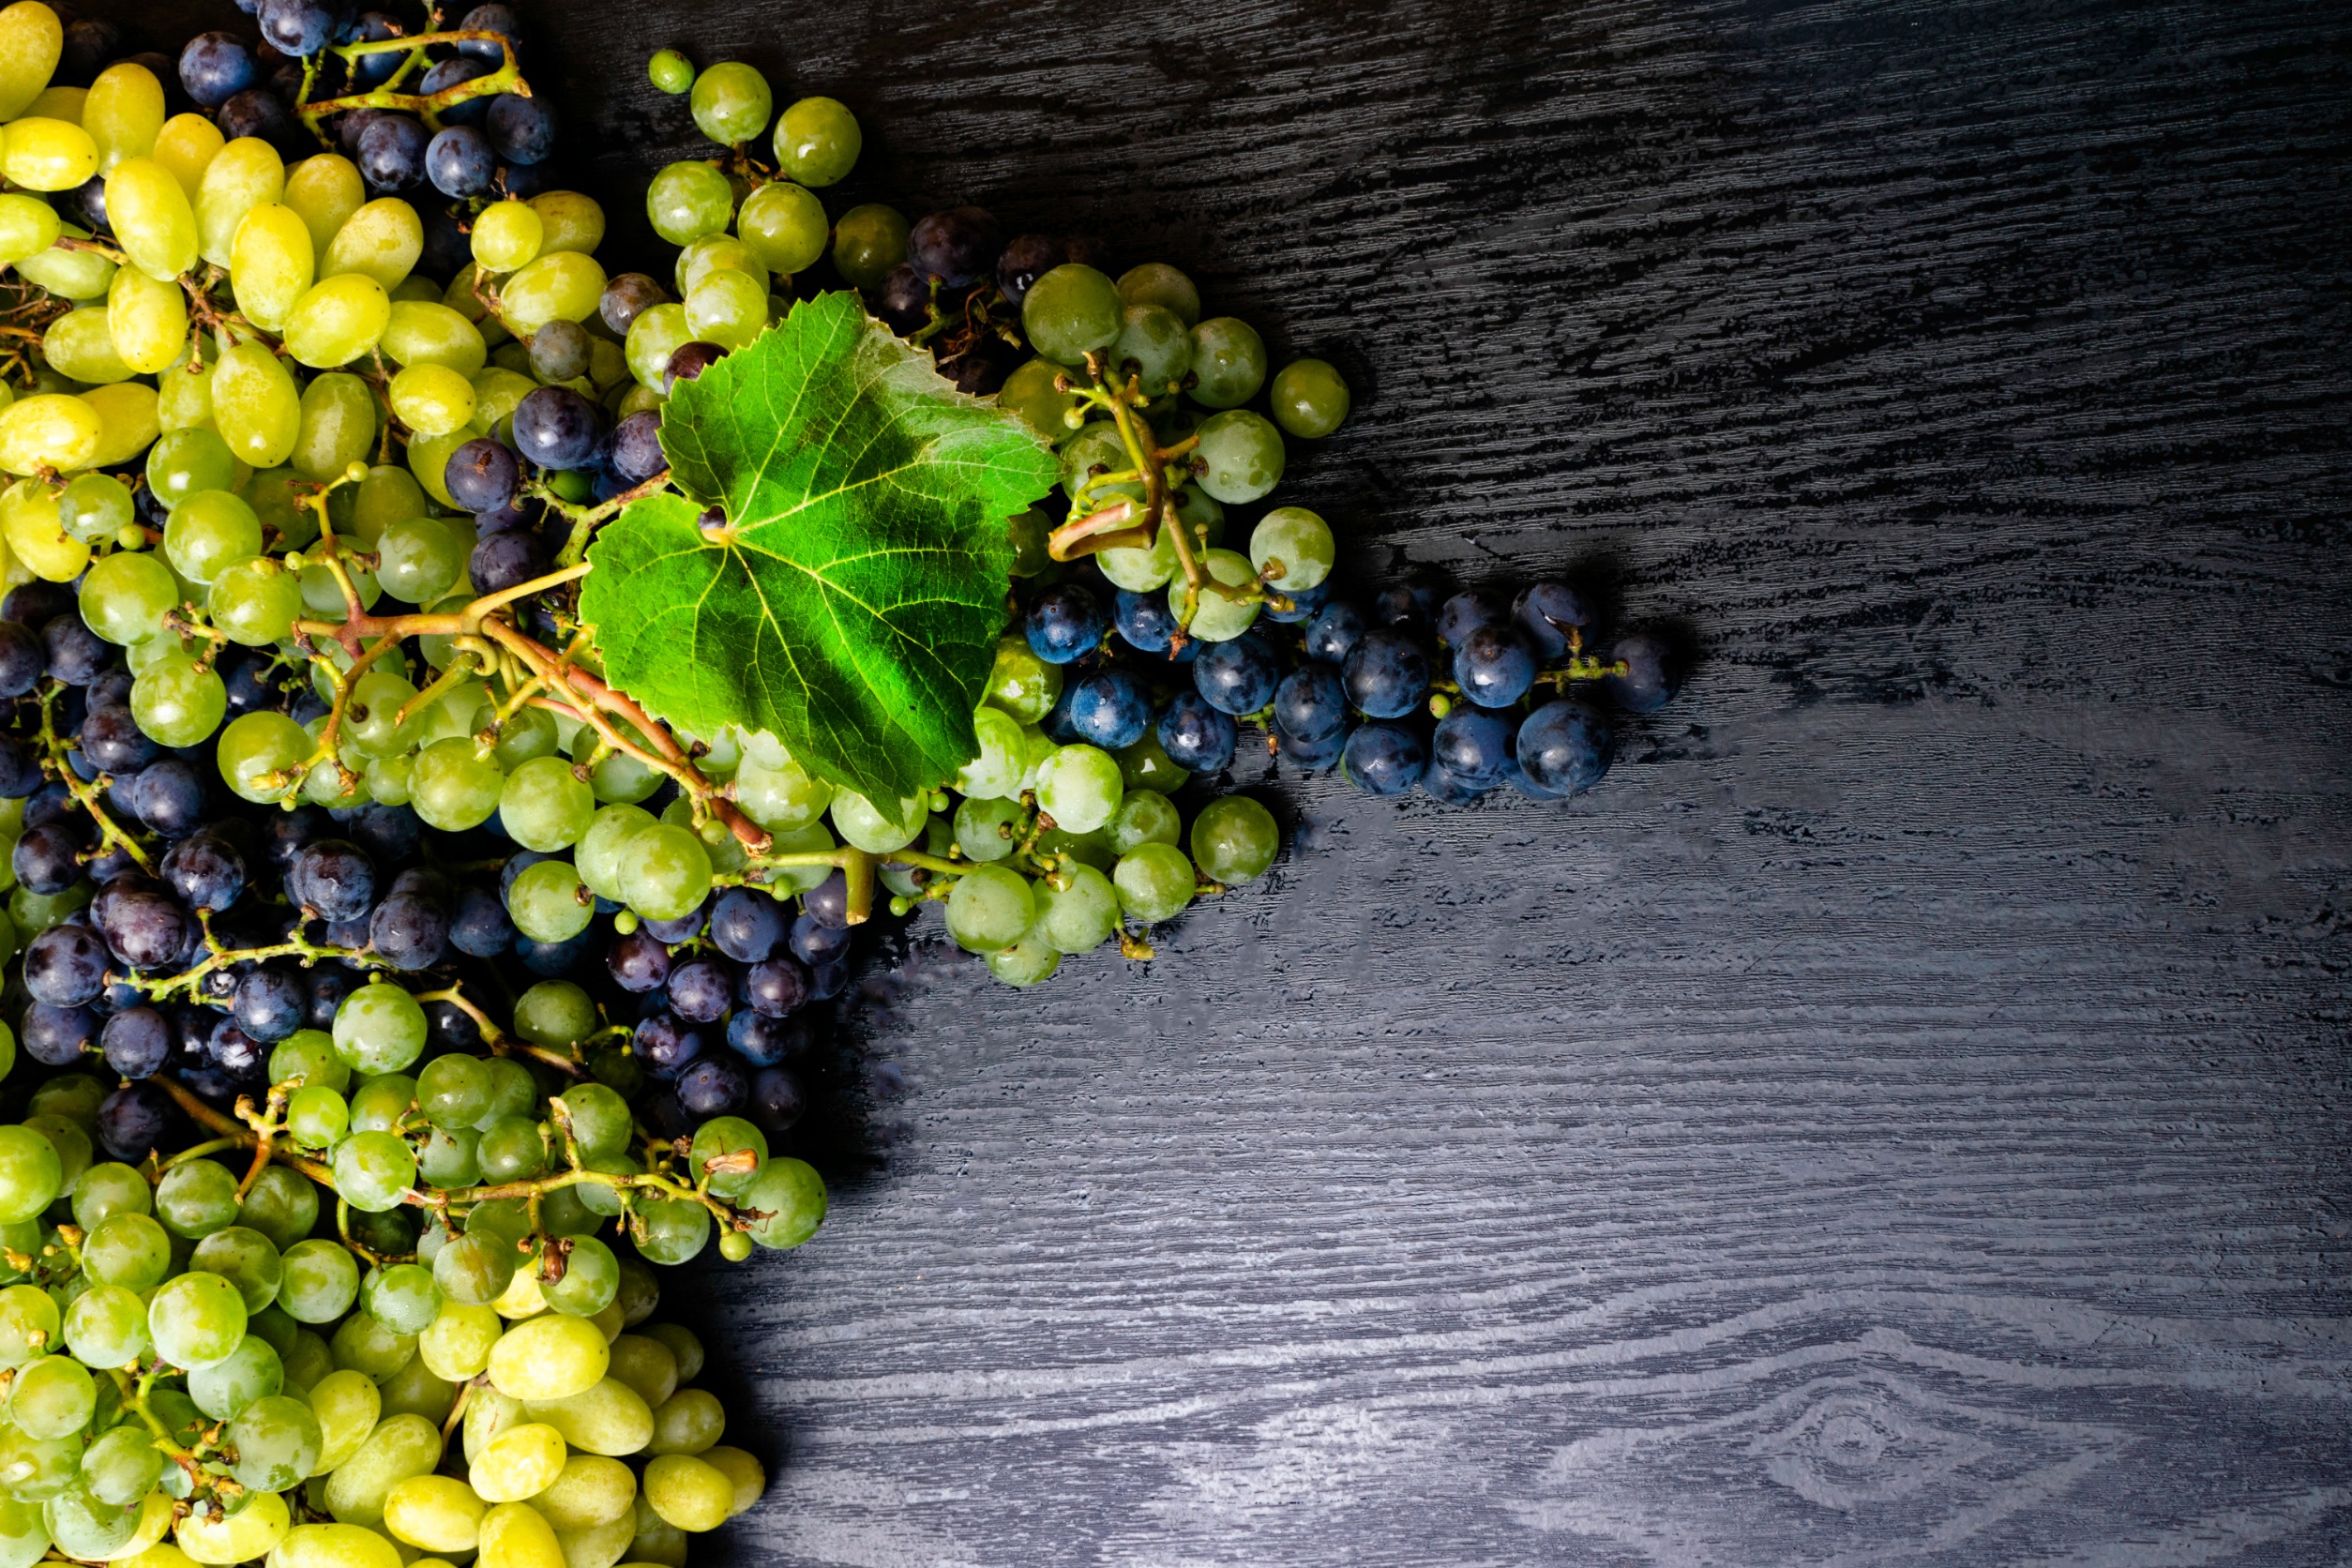 Vinná réva jako přírodní zdroj resveratrolu